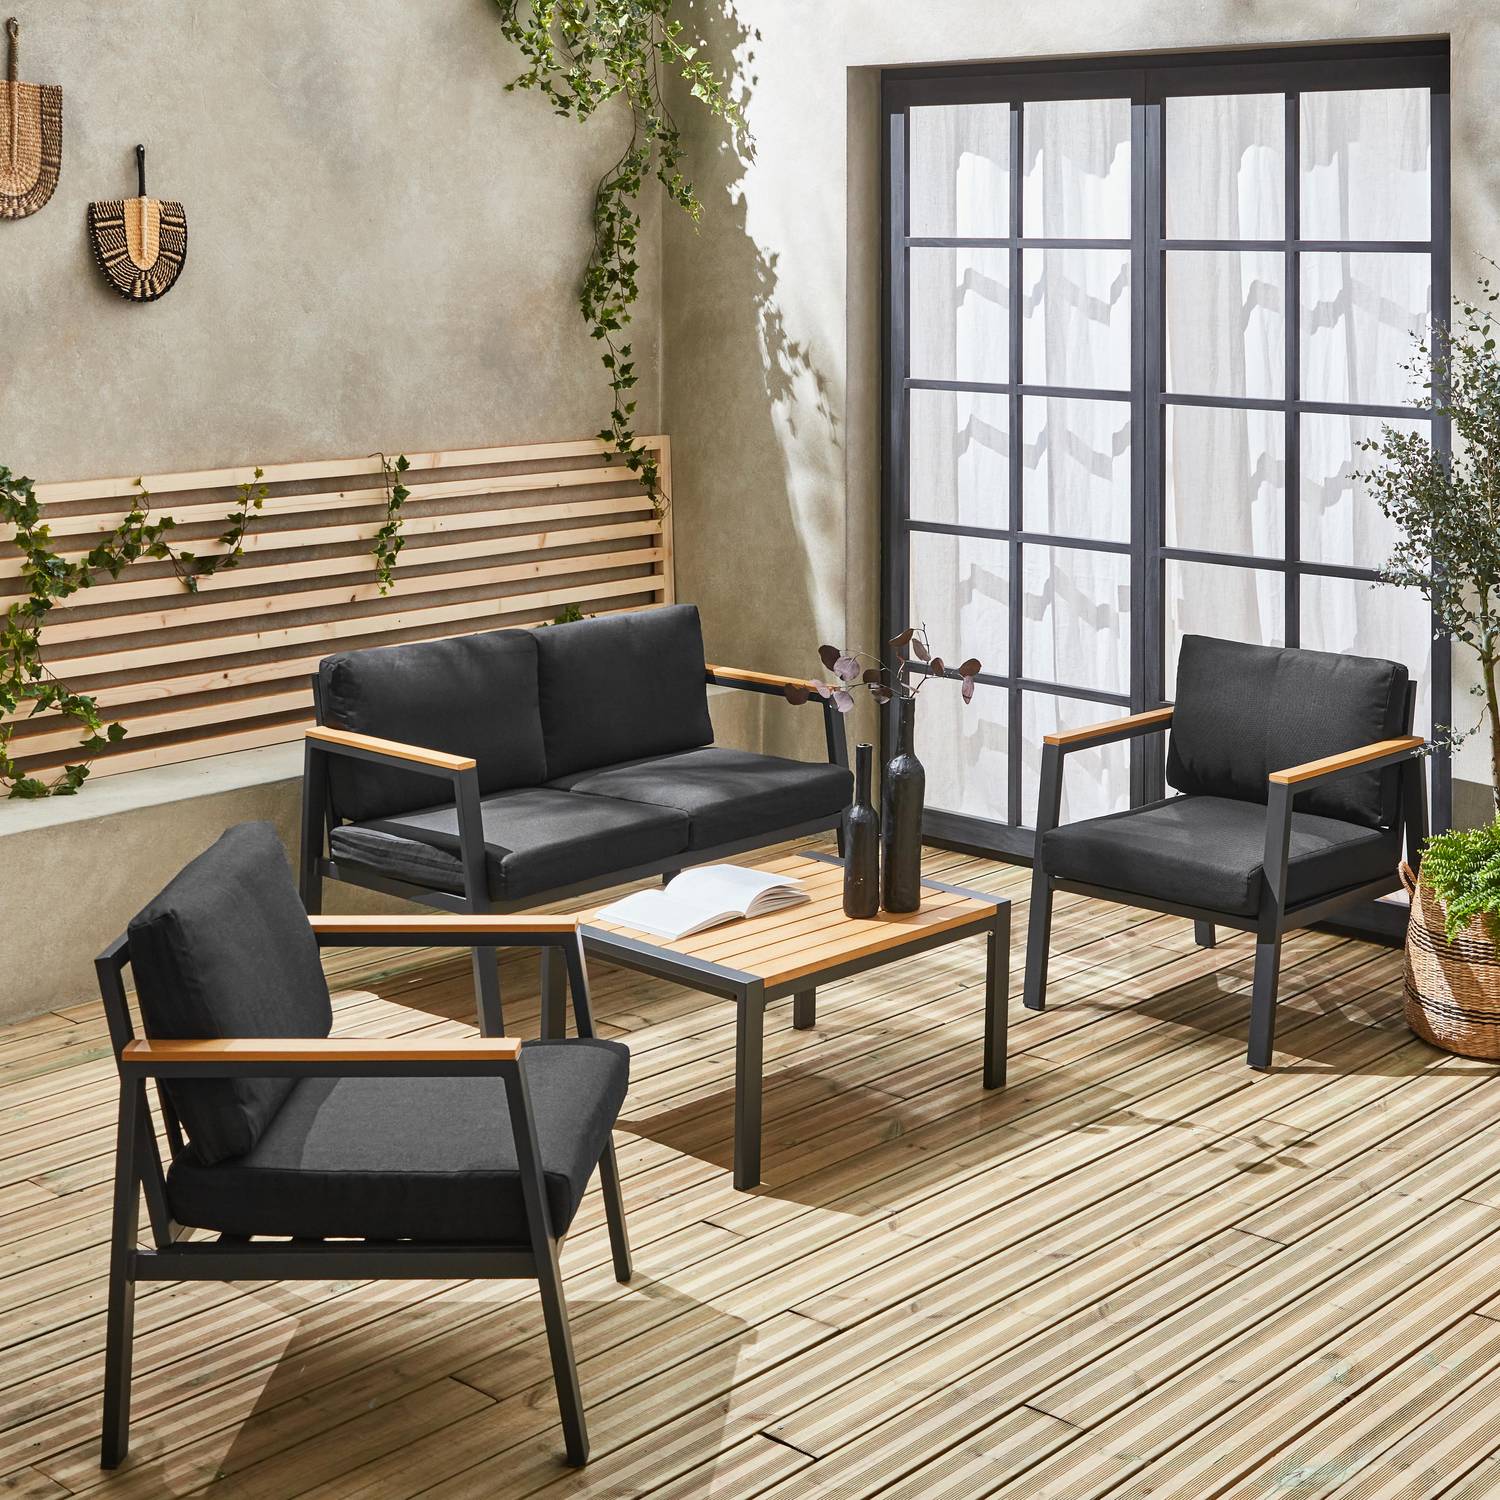 Salon de jardin Casoria, gris foncé, aluminium et polywood 4 places, 1 canapé, 2 fauteuils, 1 table basse Photo1